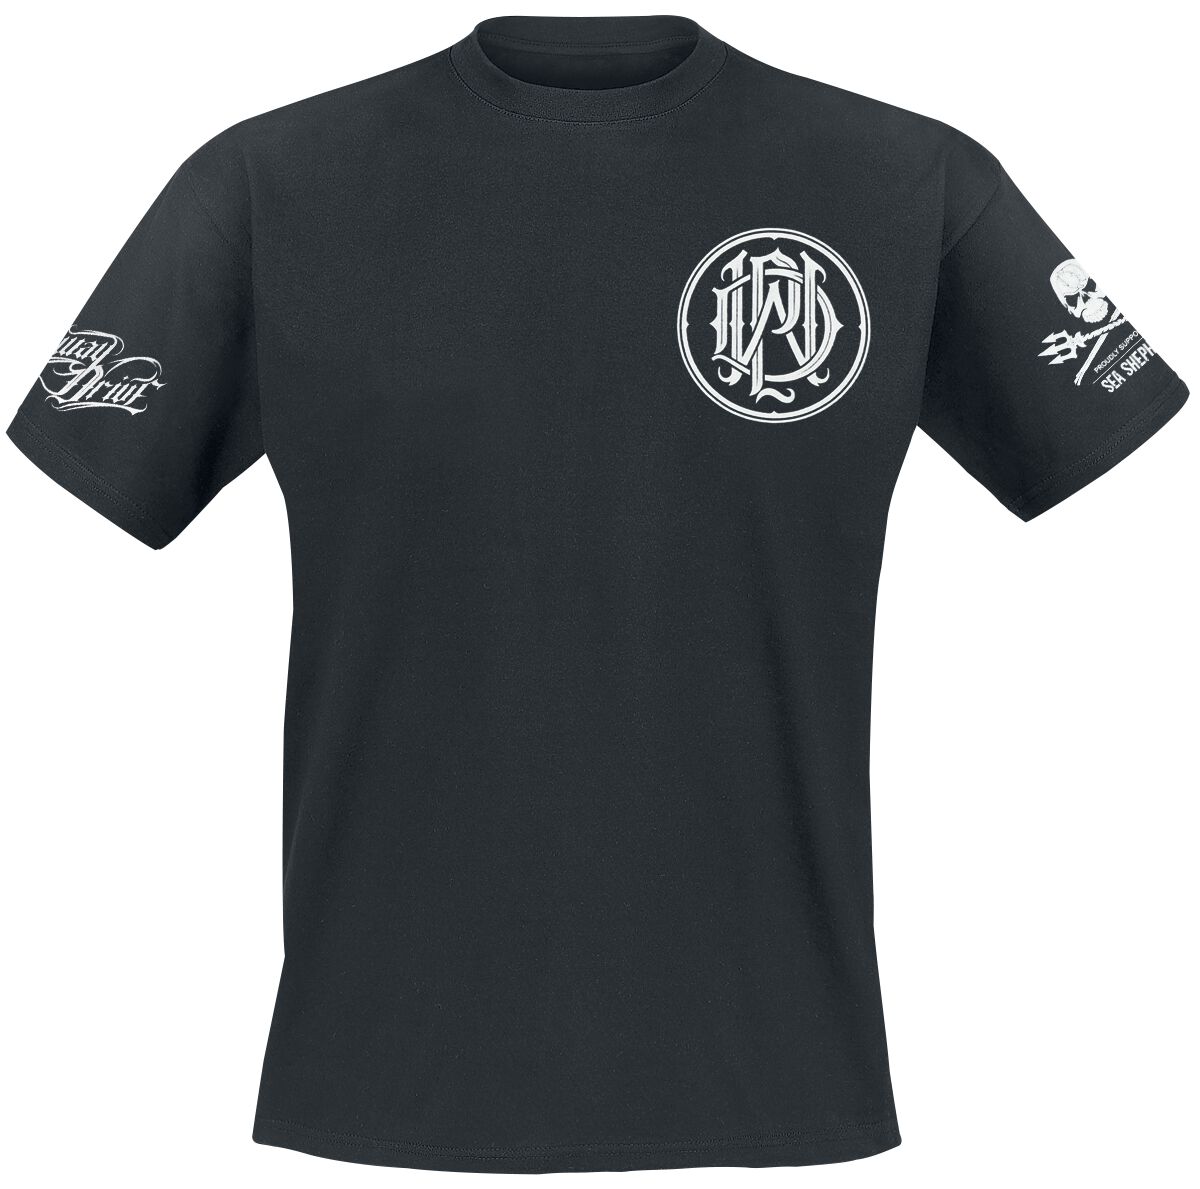 Parkway Drive T-Shirt - Sea Shepherd Cooperation - There Will Be No Future - S bis XXL - für Männer - Größe XXL - schwarz  - EMP exklusives